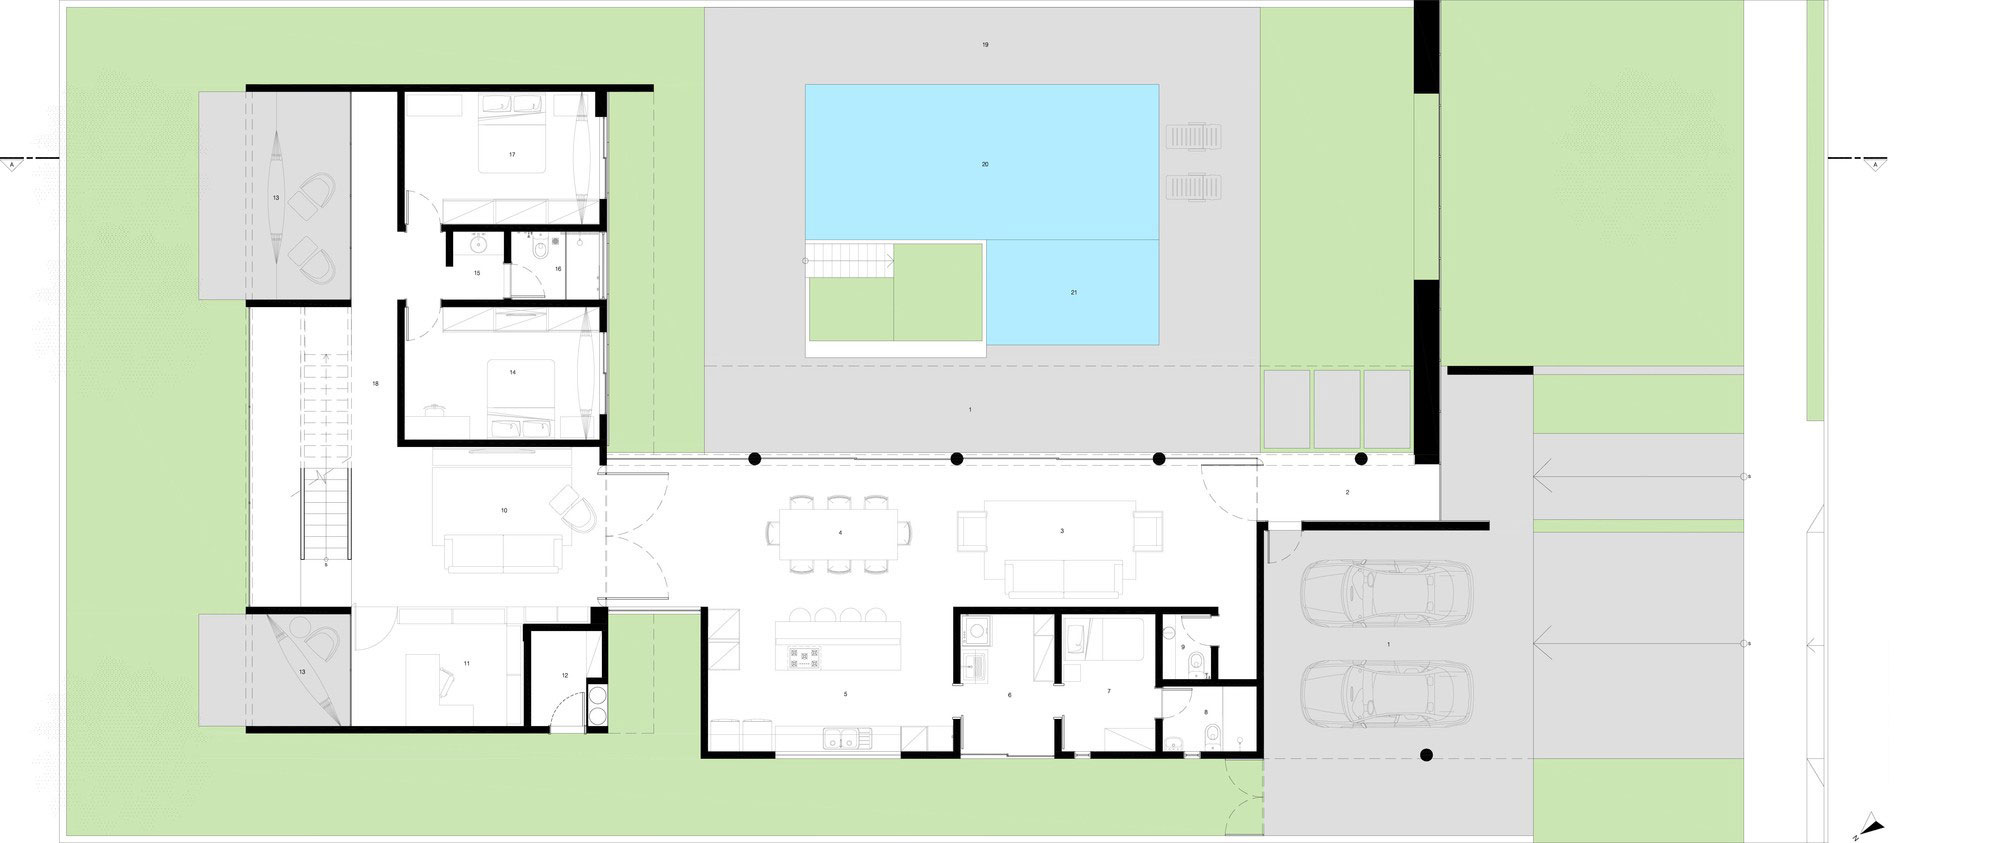 Lombok Architekt - Contemporary Haus mit Swimmingpool Zeichnung 1 